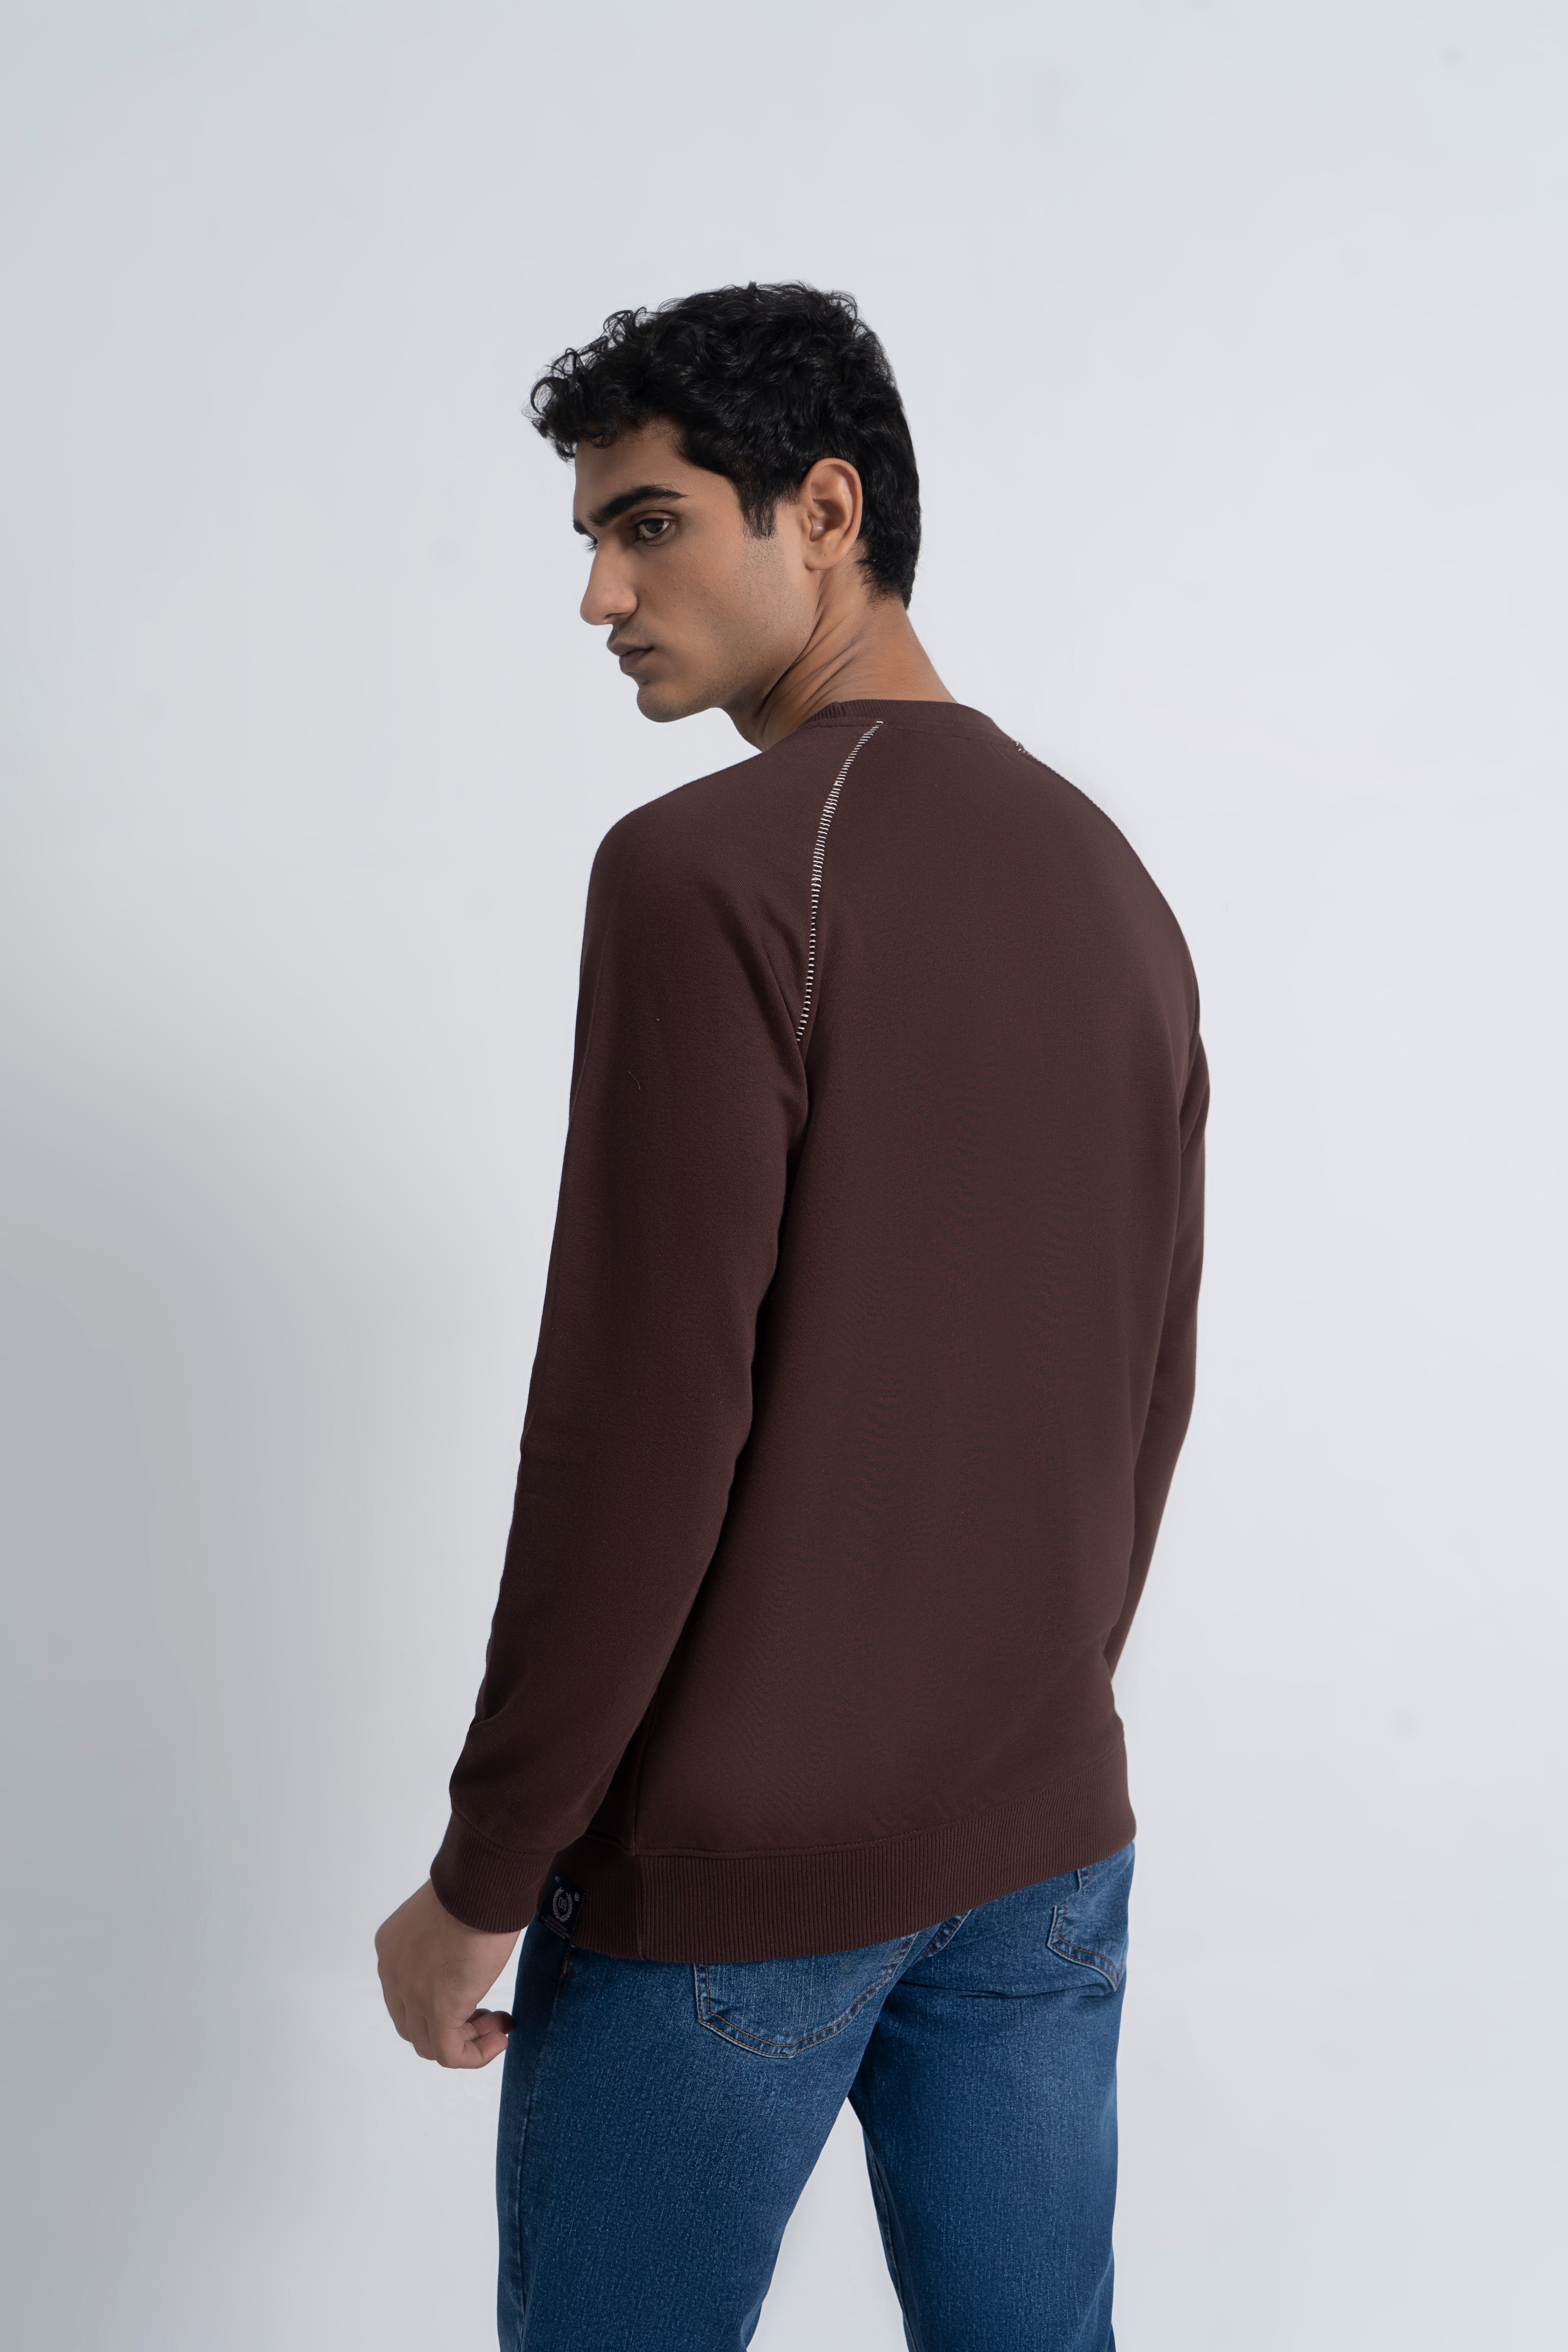 Dark Brown Graphic Sweatshirt